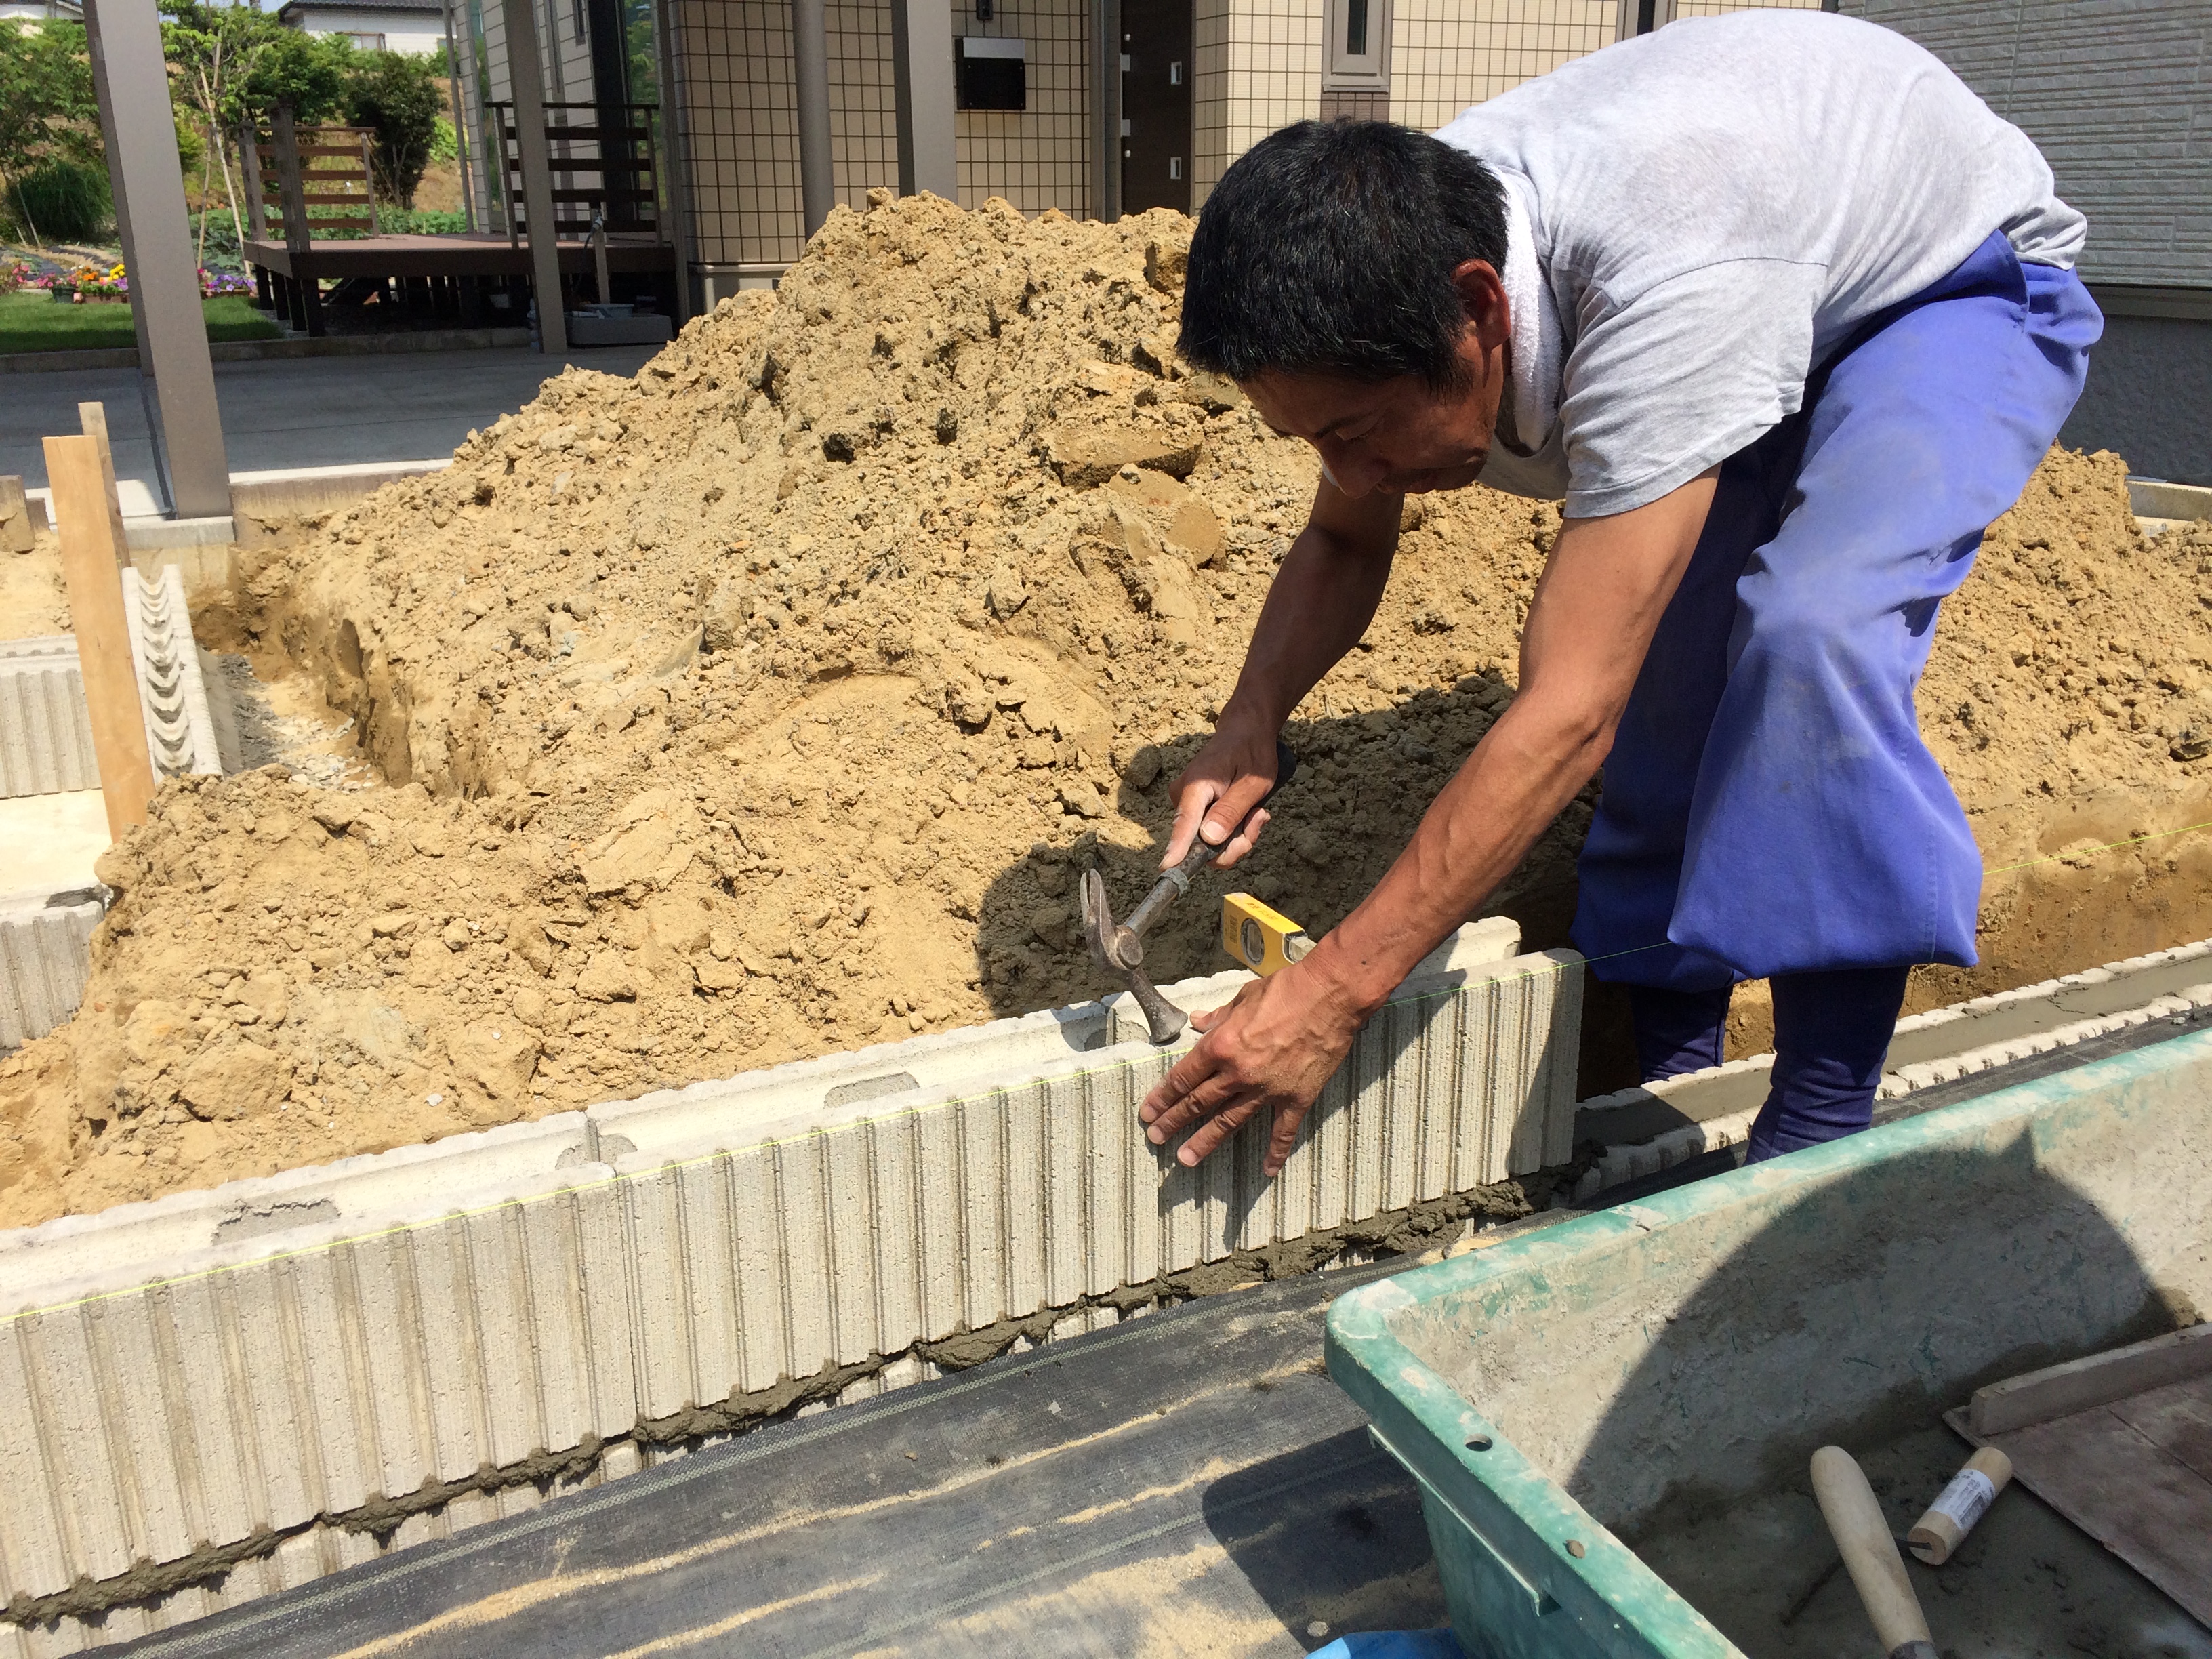 畑 野菜 と植栽のためにブロック設置 三条市 造園 ガーデニング 庭のことなら新潟県三条市の齊藤六左園